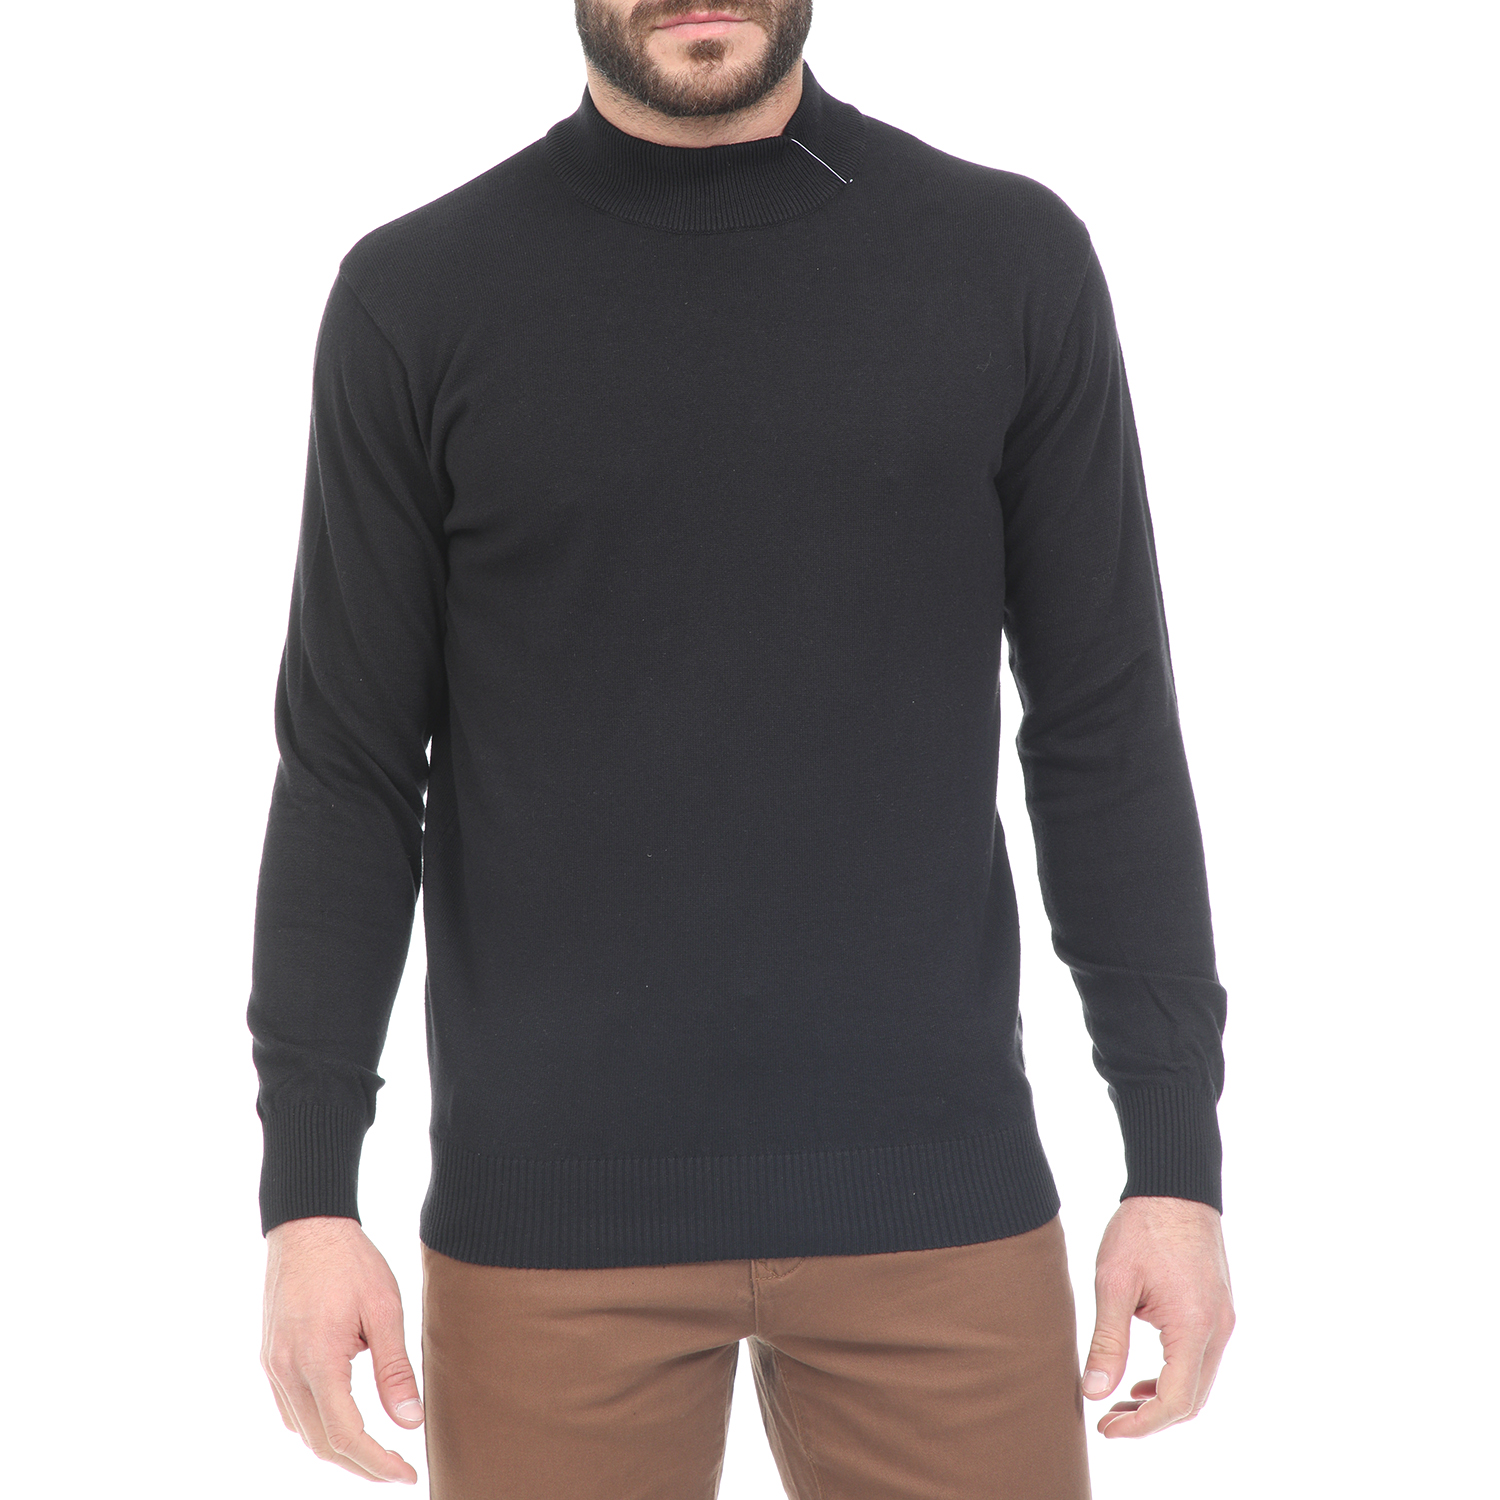 Ανδρικά/Ρούχα/Πλεκτά-Ζακέτες/Πουλόβερ CATAMARAN SAILWEAR - Ανδρική πλεκτή μπλούζα CATAMARAN SAILWEAR μαύρη (μεγάλα μεγέθη)